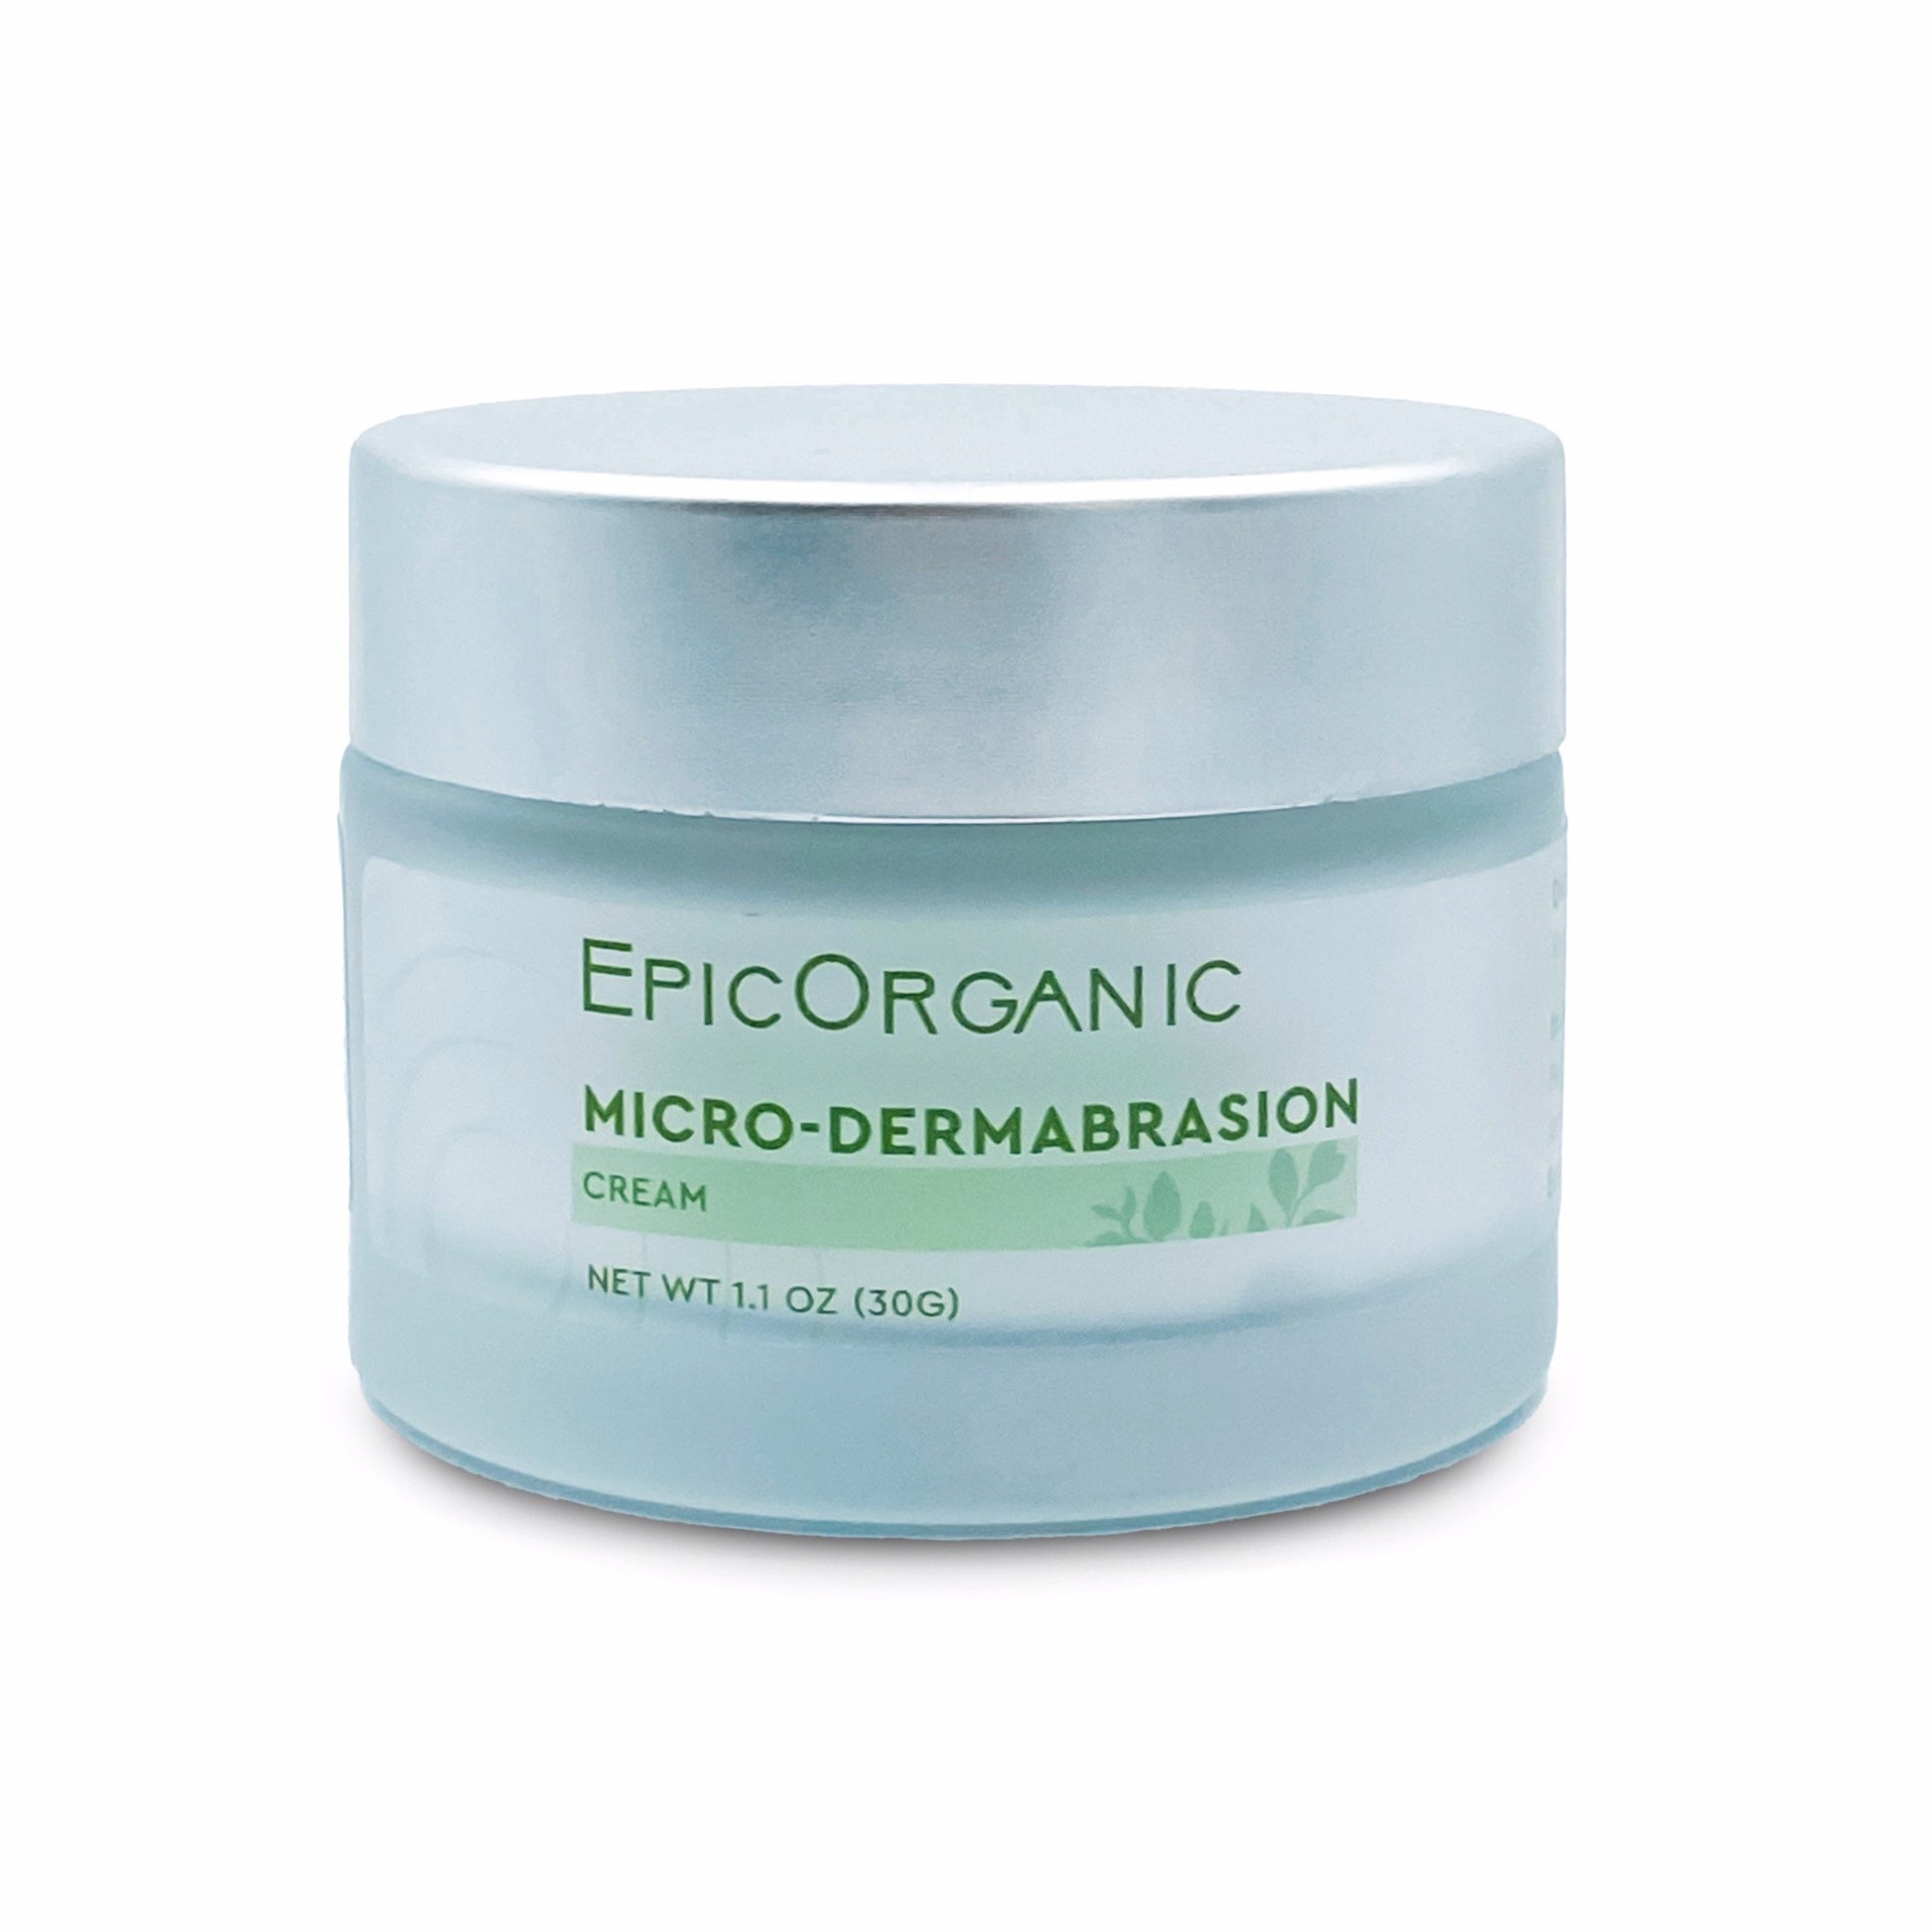 Epic Organic Micro-Dermabrasion Cream (1.1 oz) Epic Organic